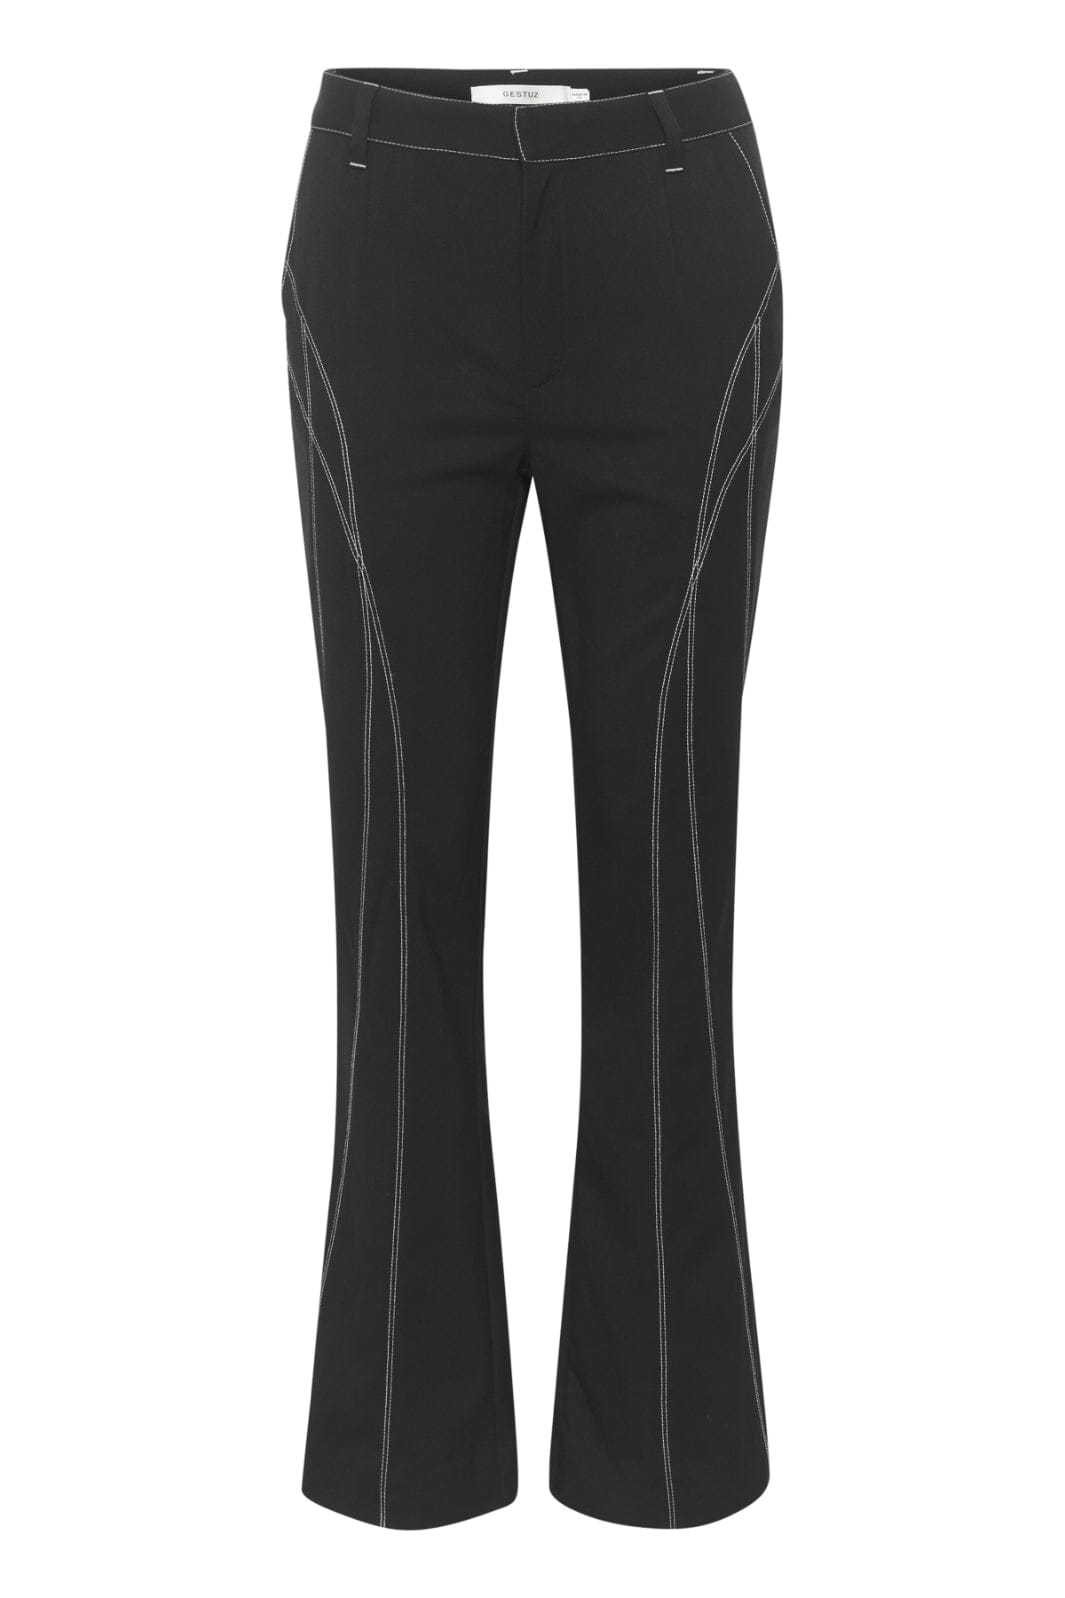 Gestuz - AcuraGZ HW pants - Black Bukser 